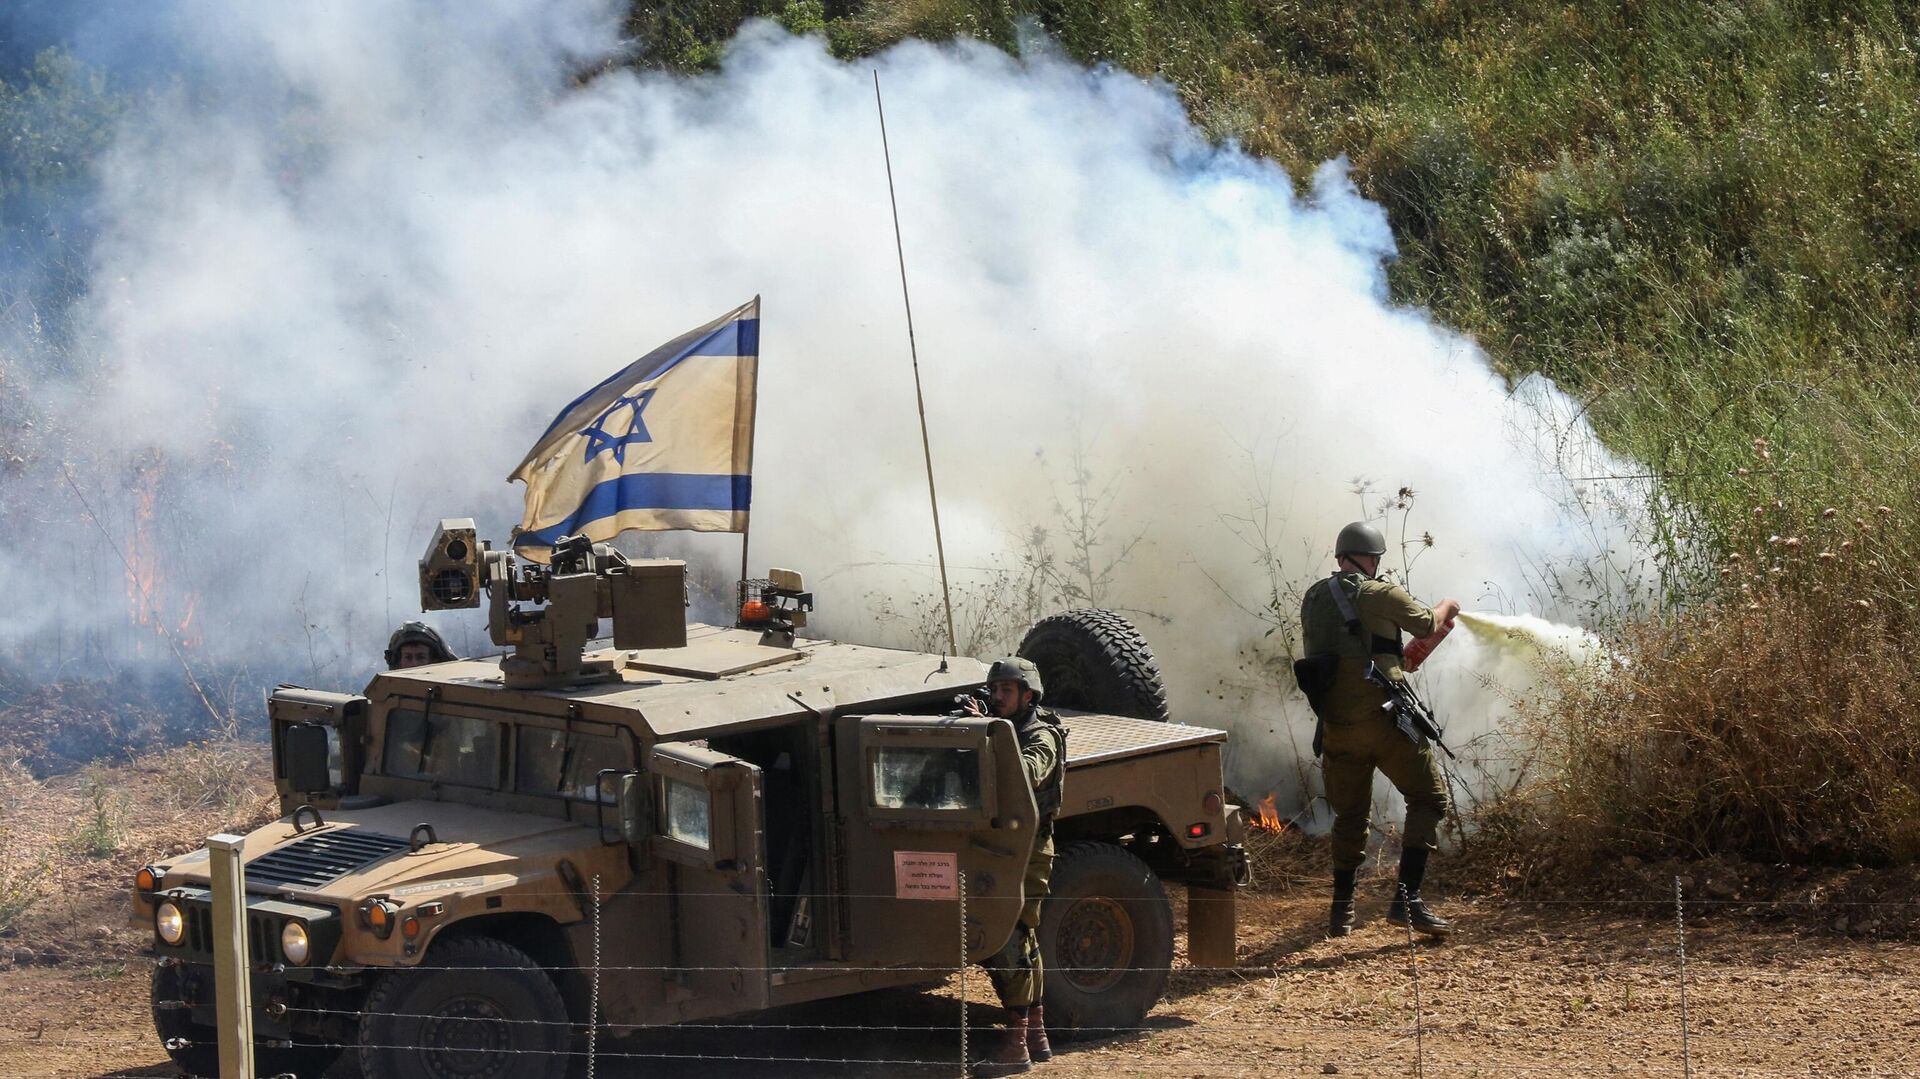 "الحرائق الودية" تؤثر سلباً على القوات الإسرائيلية